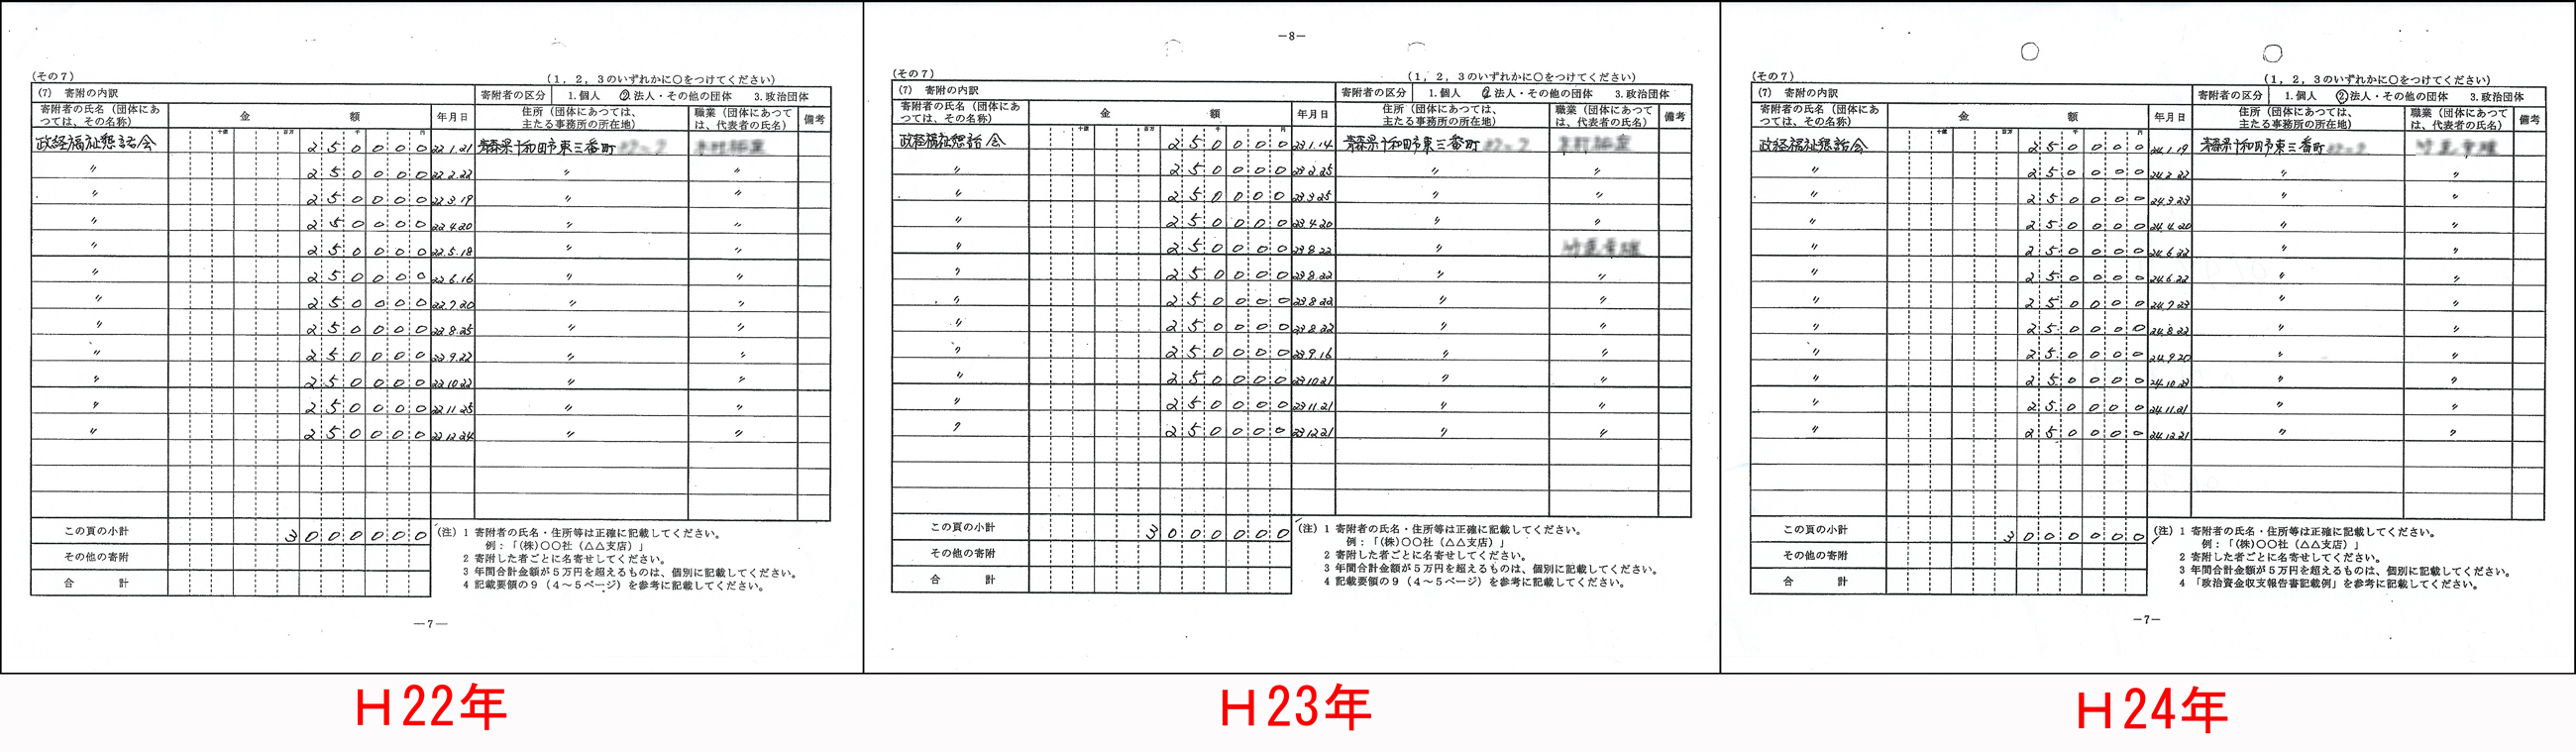 http://hunter-investigate.jp/news/2014/10/09/20141009_h01-02.jpg